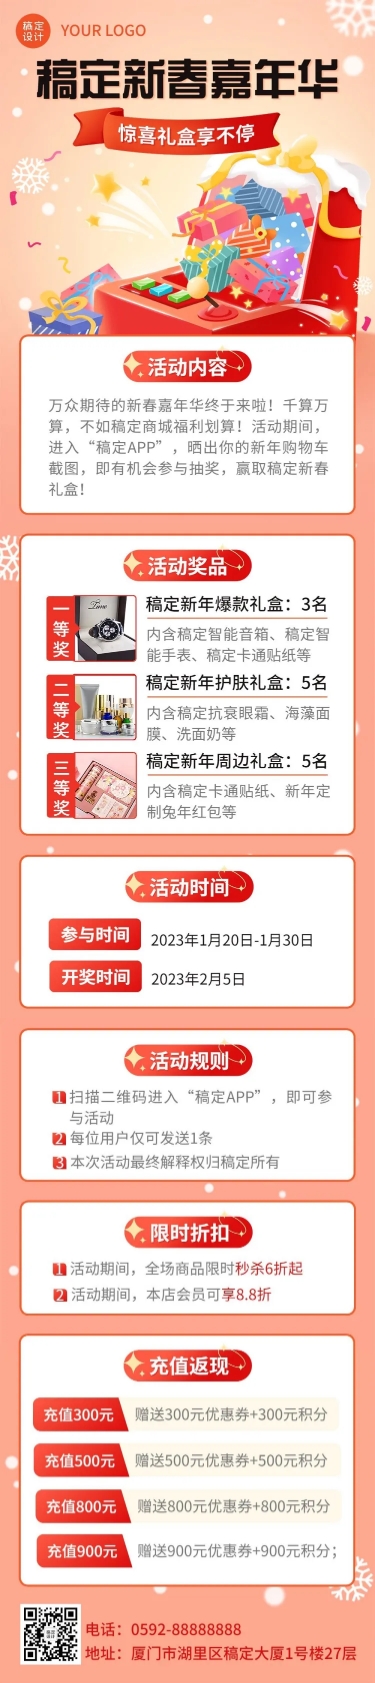 新年春节节日礼盒促销文章长图